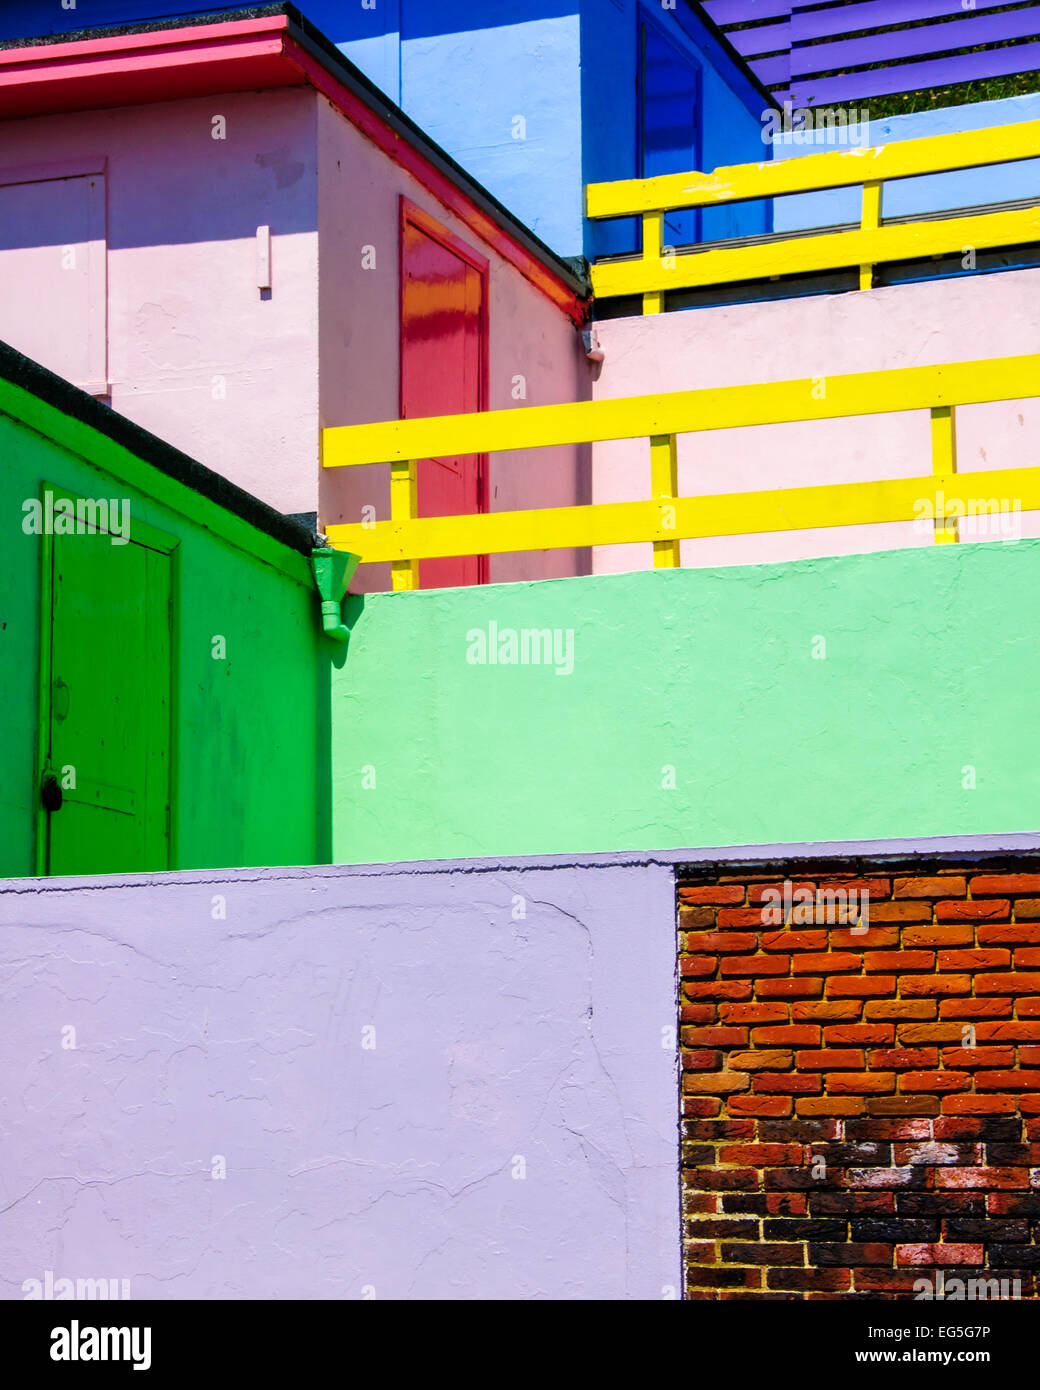 Maisonnettes colorées à Folkestone, Kent, UK Banque D'Images